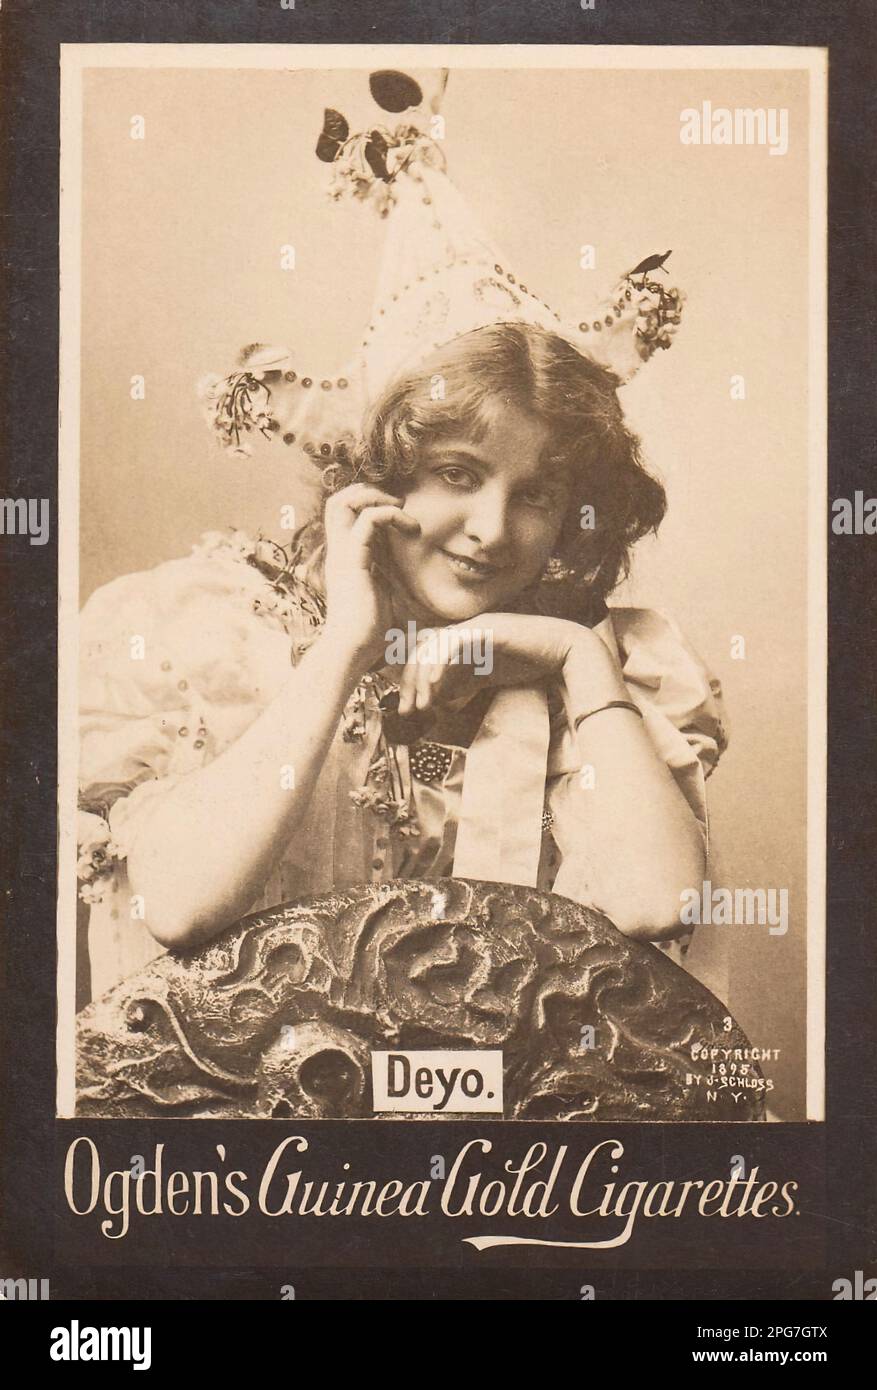 Portrait der Schauspielerin Deyo - Vintage Cigarette Card, Victorian Epoche Stockfoto